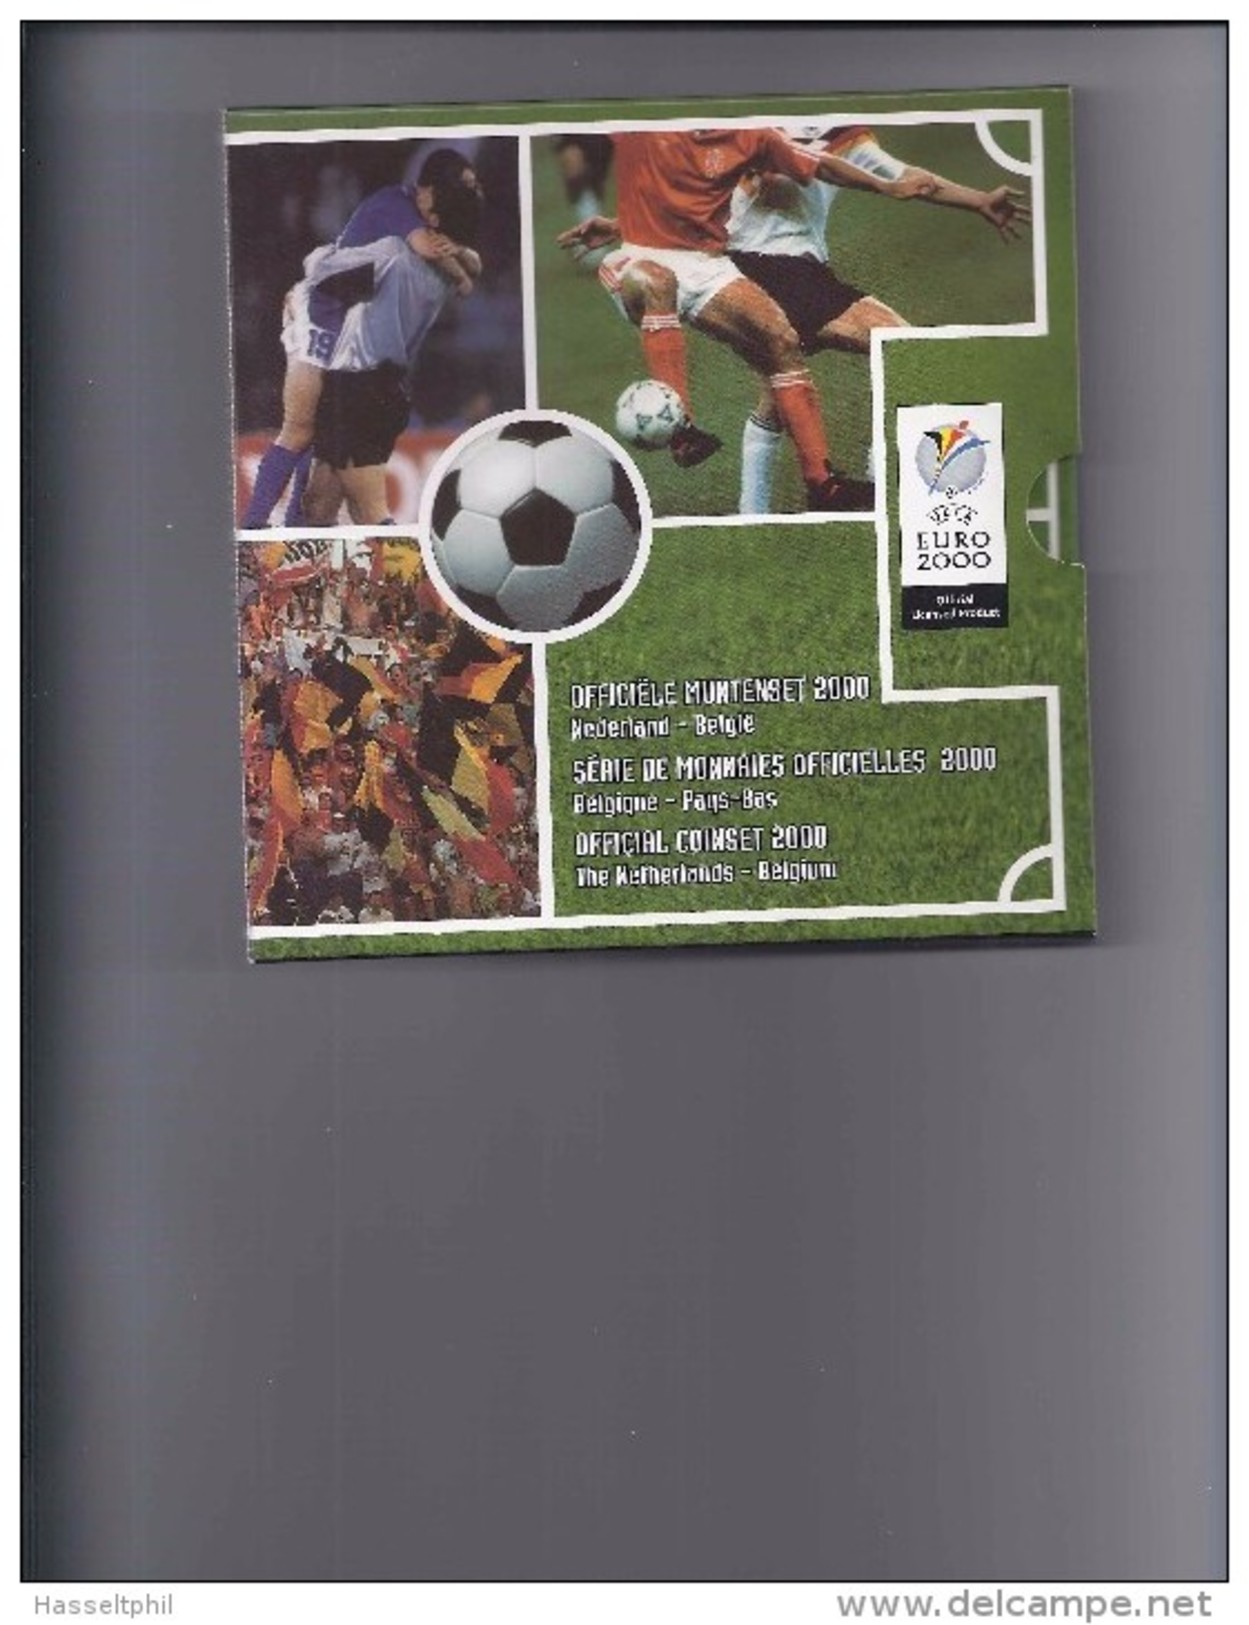 BELGIE -BELGIQUE Officiële Muntenset 2000 Nederland - België  Uefa Euro 2000 - 50 Francs